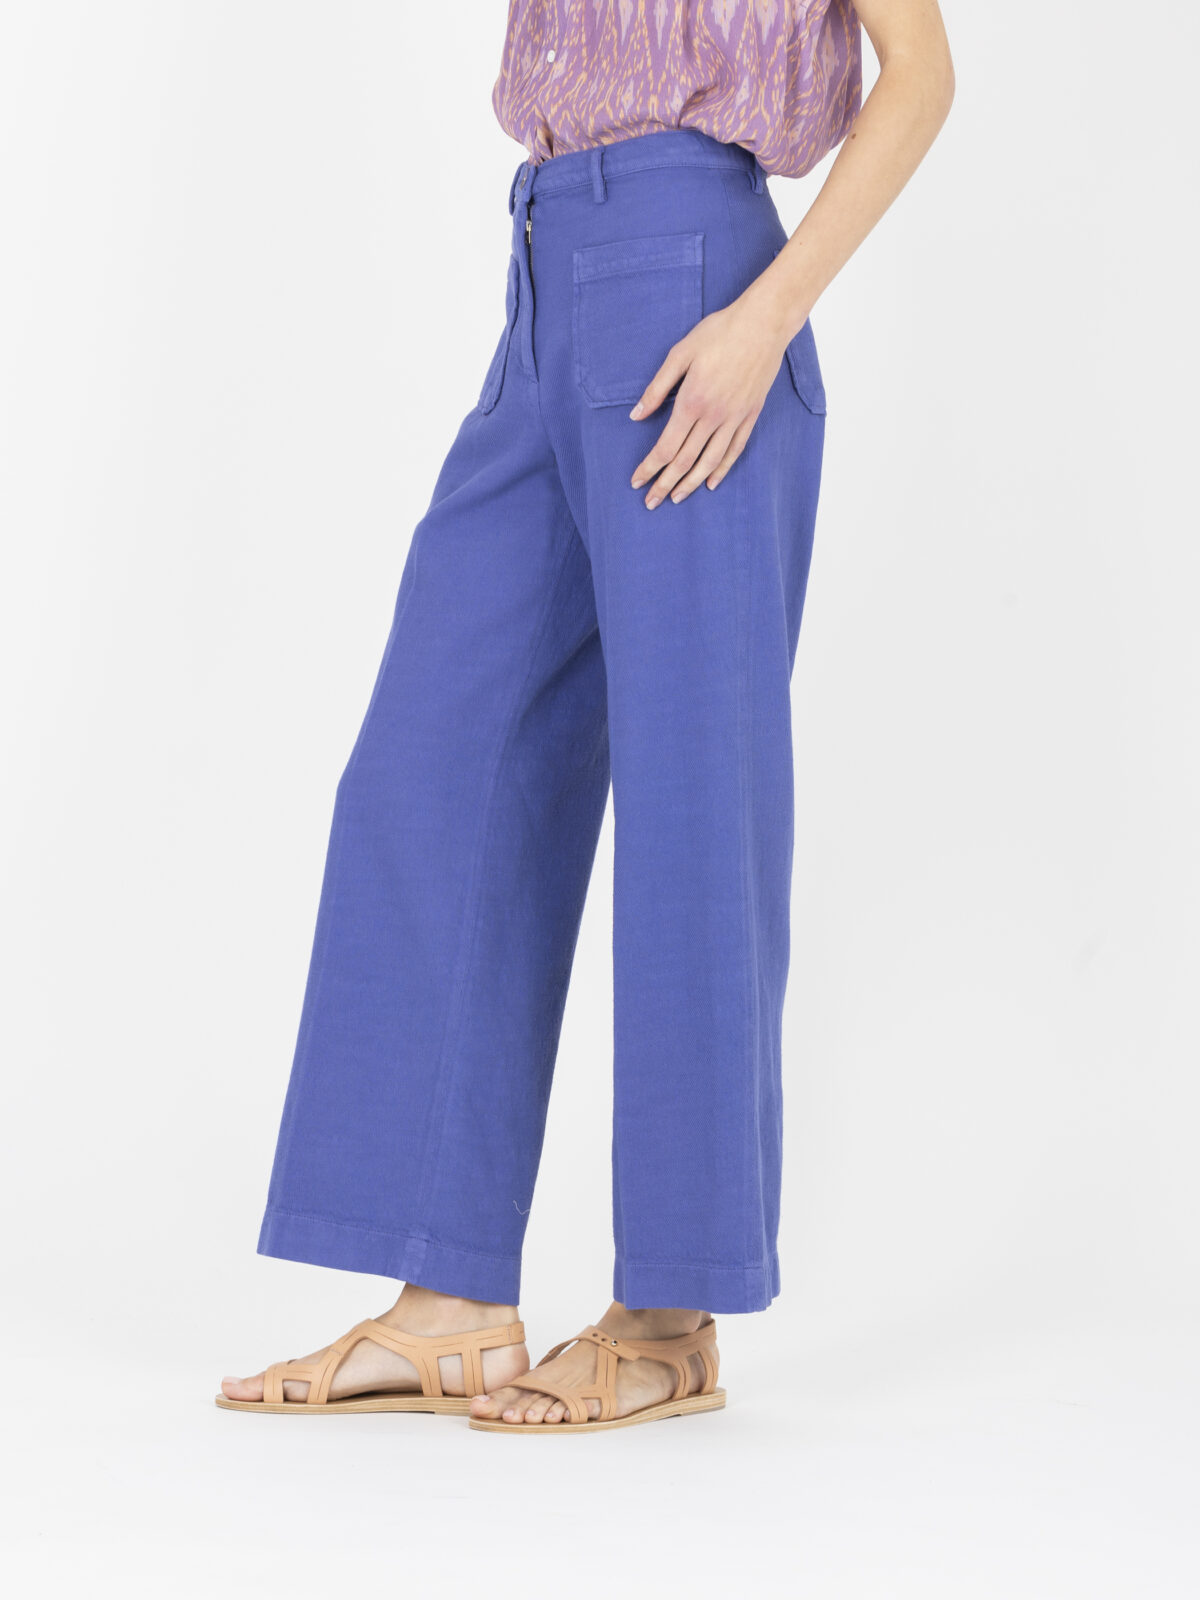 hendrick-cotton-laventer-pants-high-waist-crop-pockets-sessun-matchboxathens